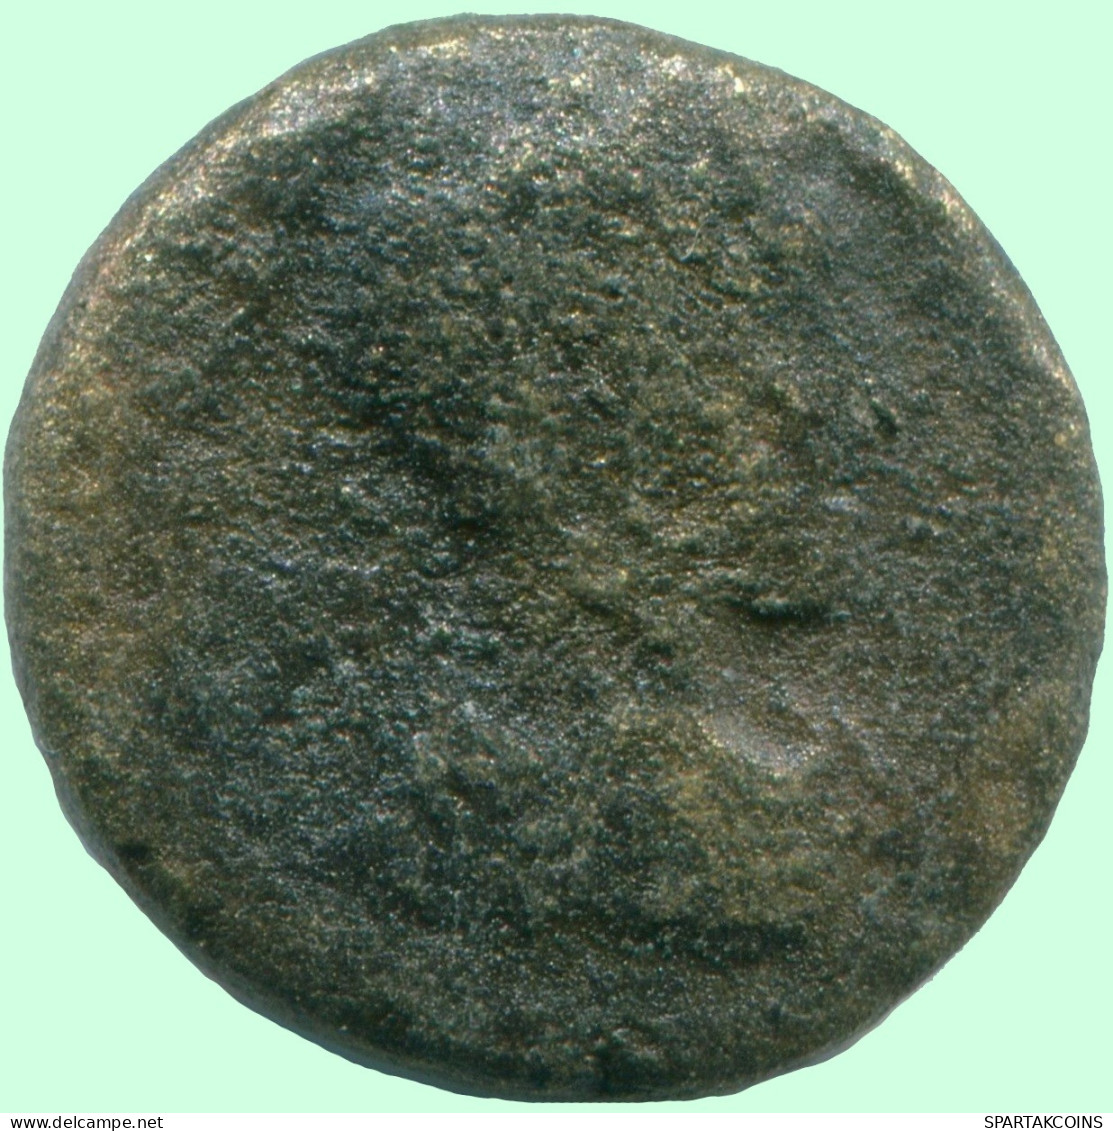 Auténtico Original GRIEGO ANTIGUOAE Moneda 3.7g/16.2mm #ANC12991.7.E.A - Grecques